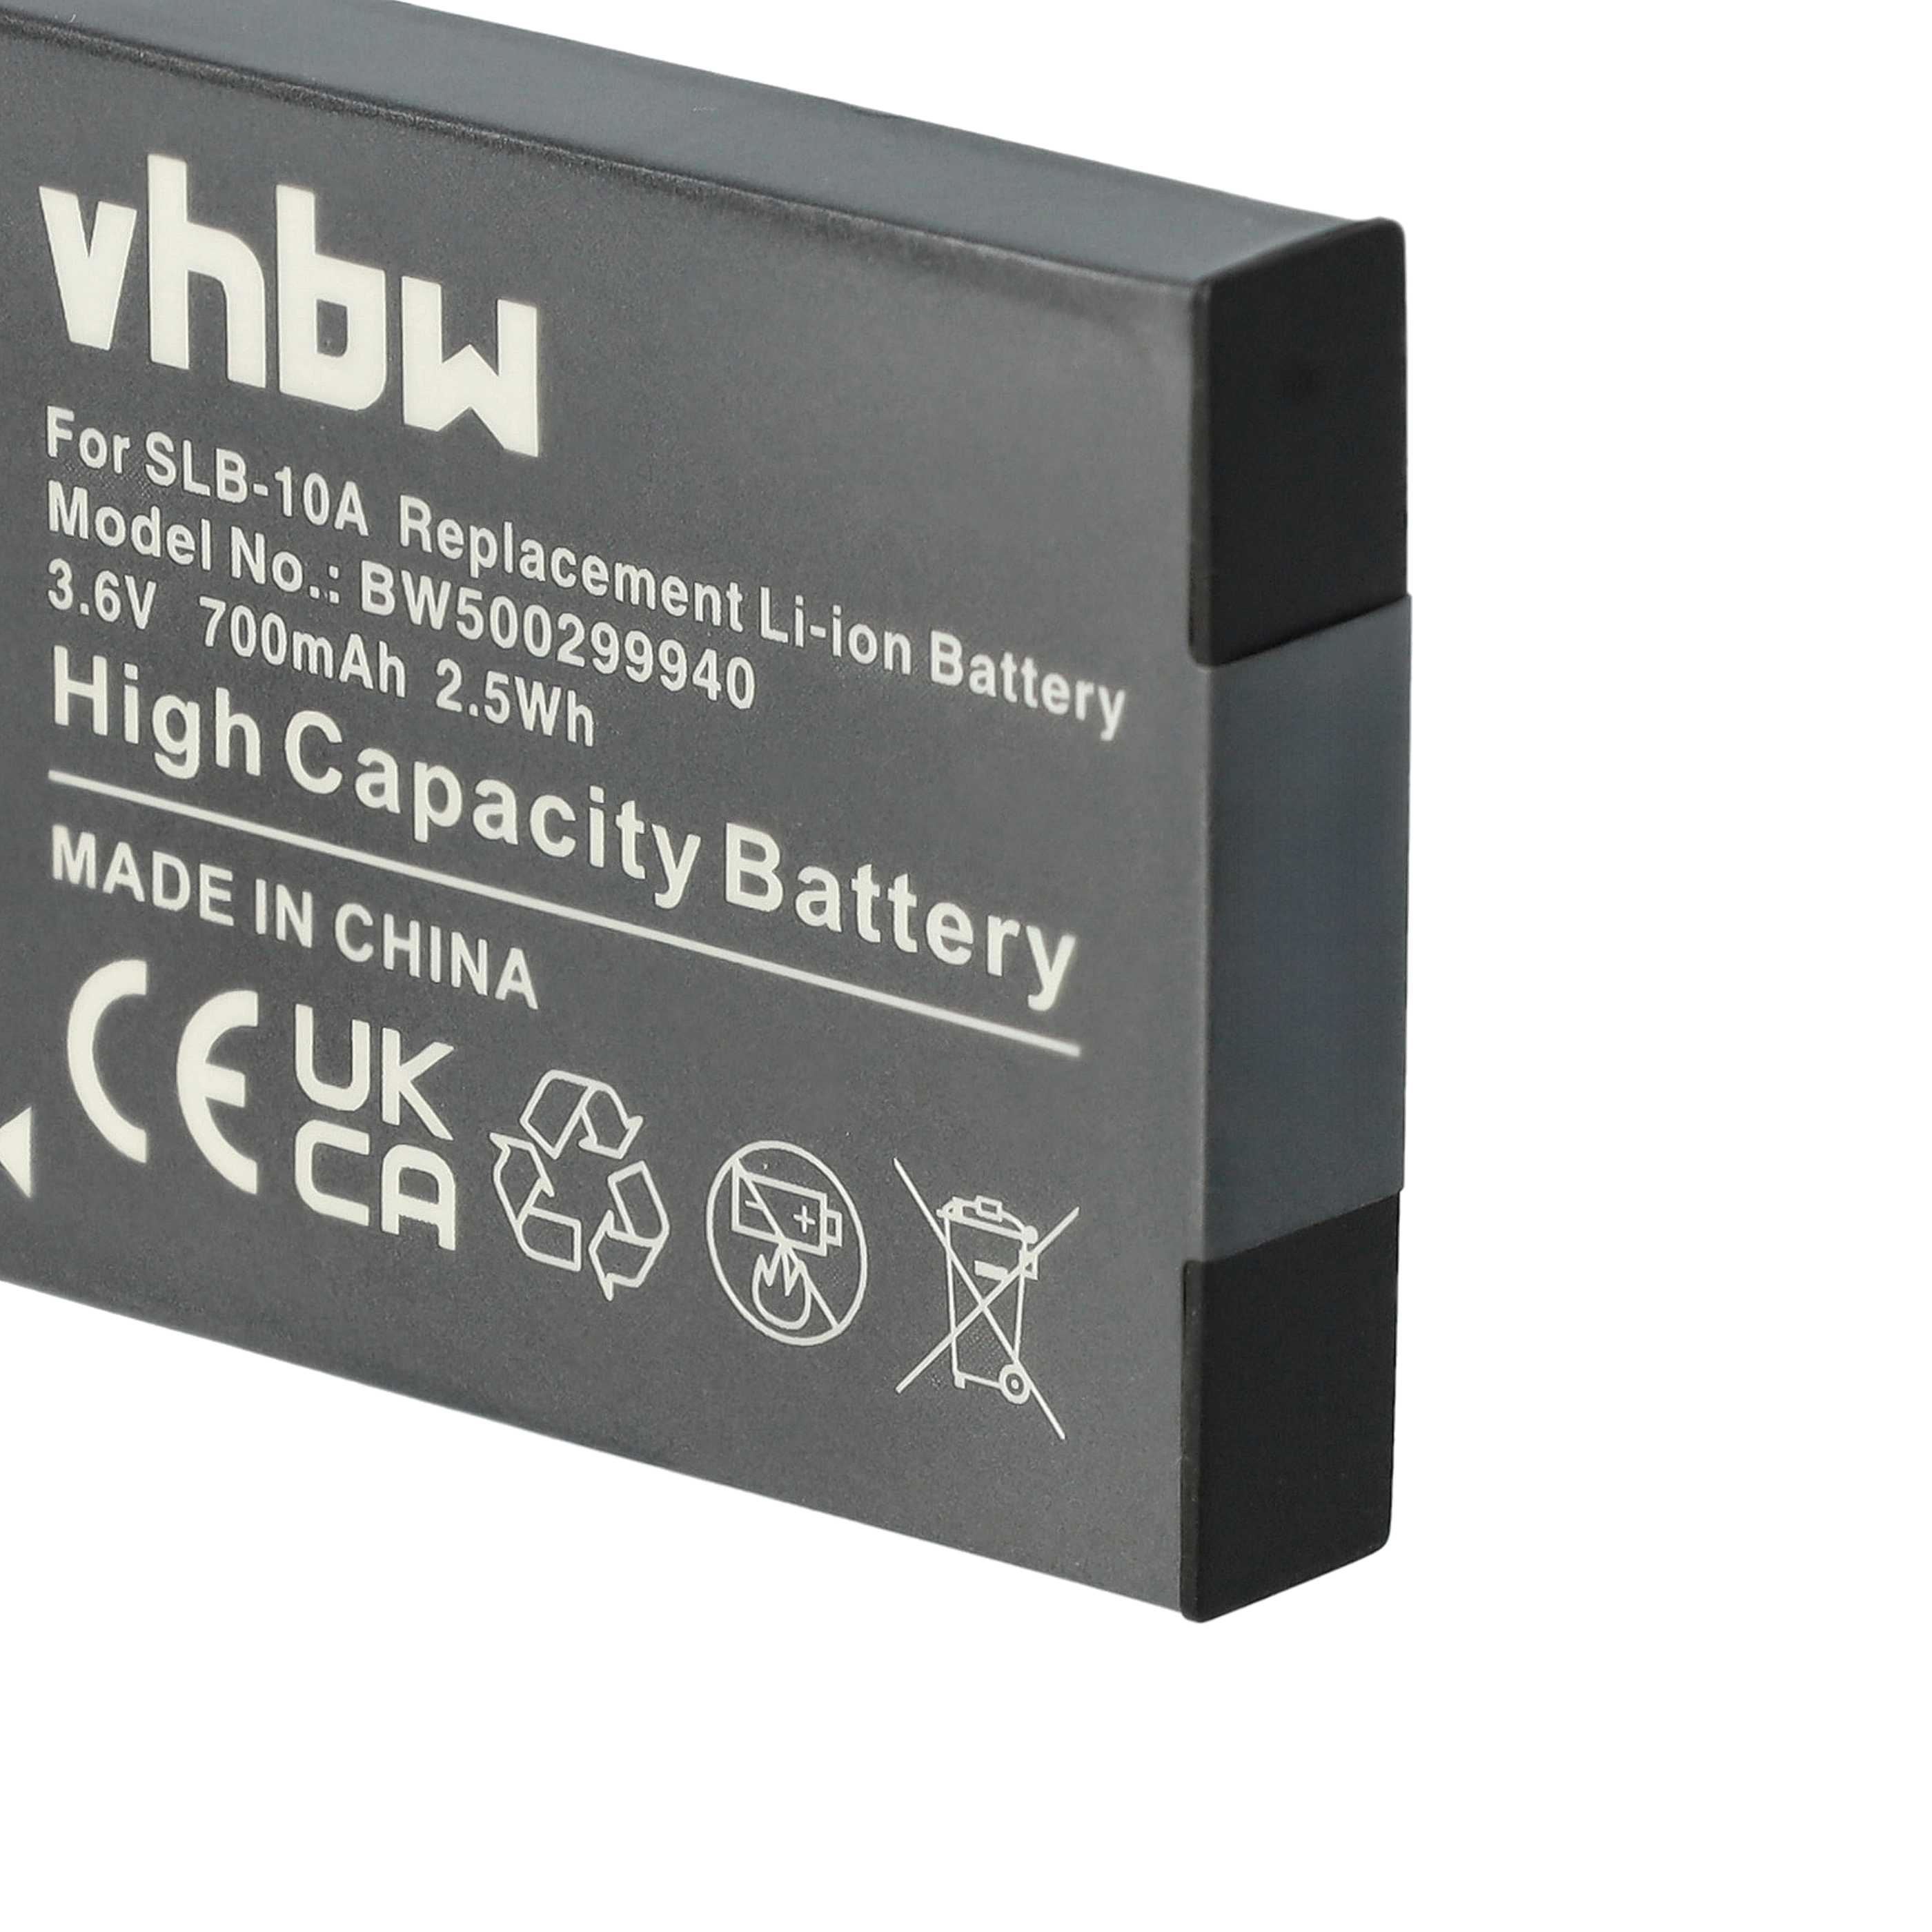 Batterie remplace Samsung BP-10A, SLB-10A, BP10A pour caméscope - 700mAh 3,6V Li-ion